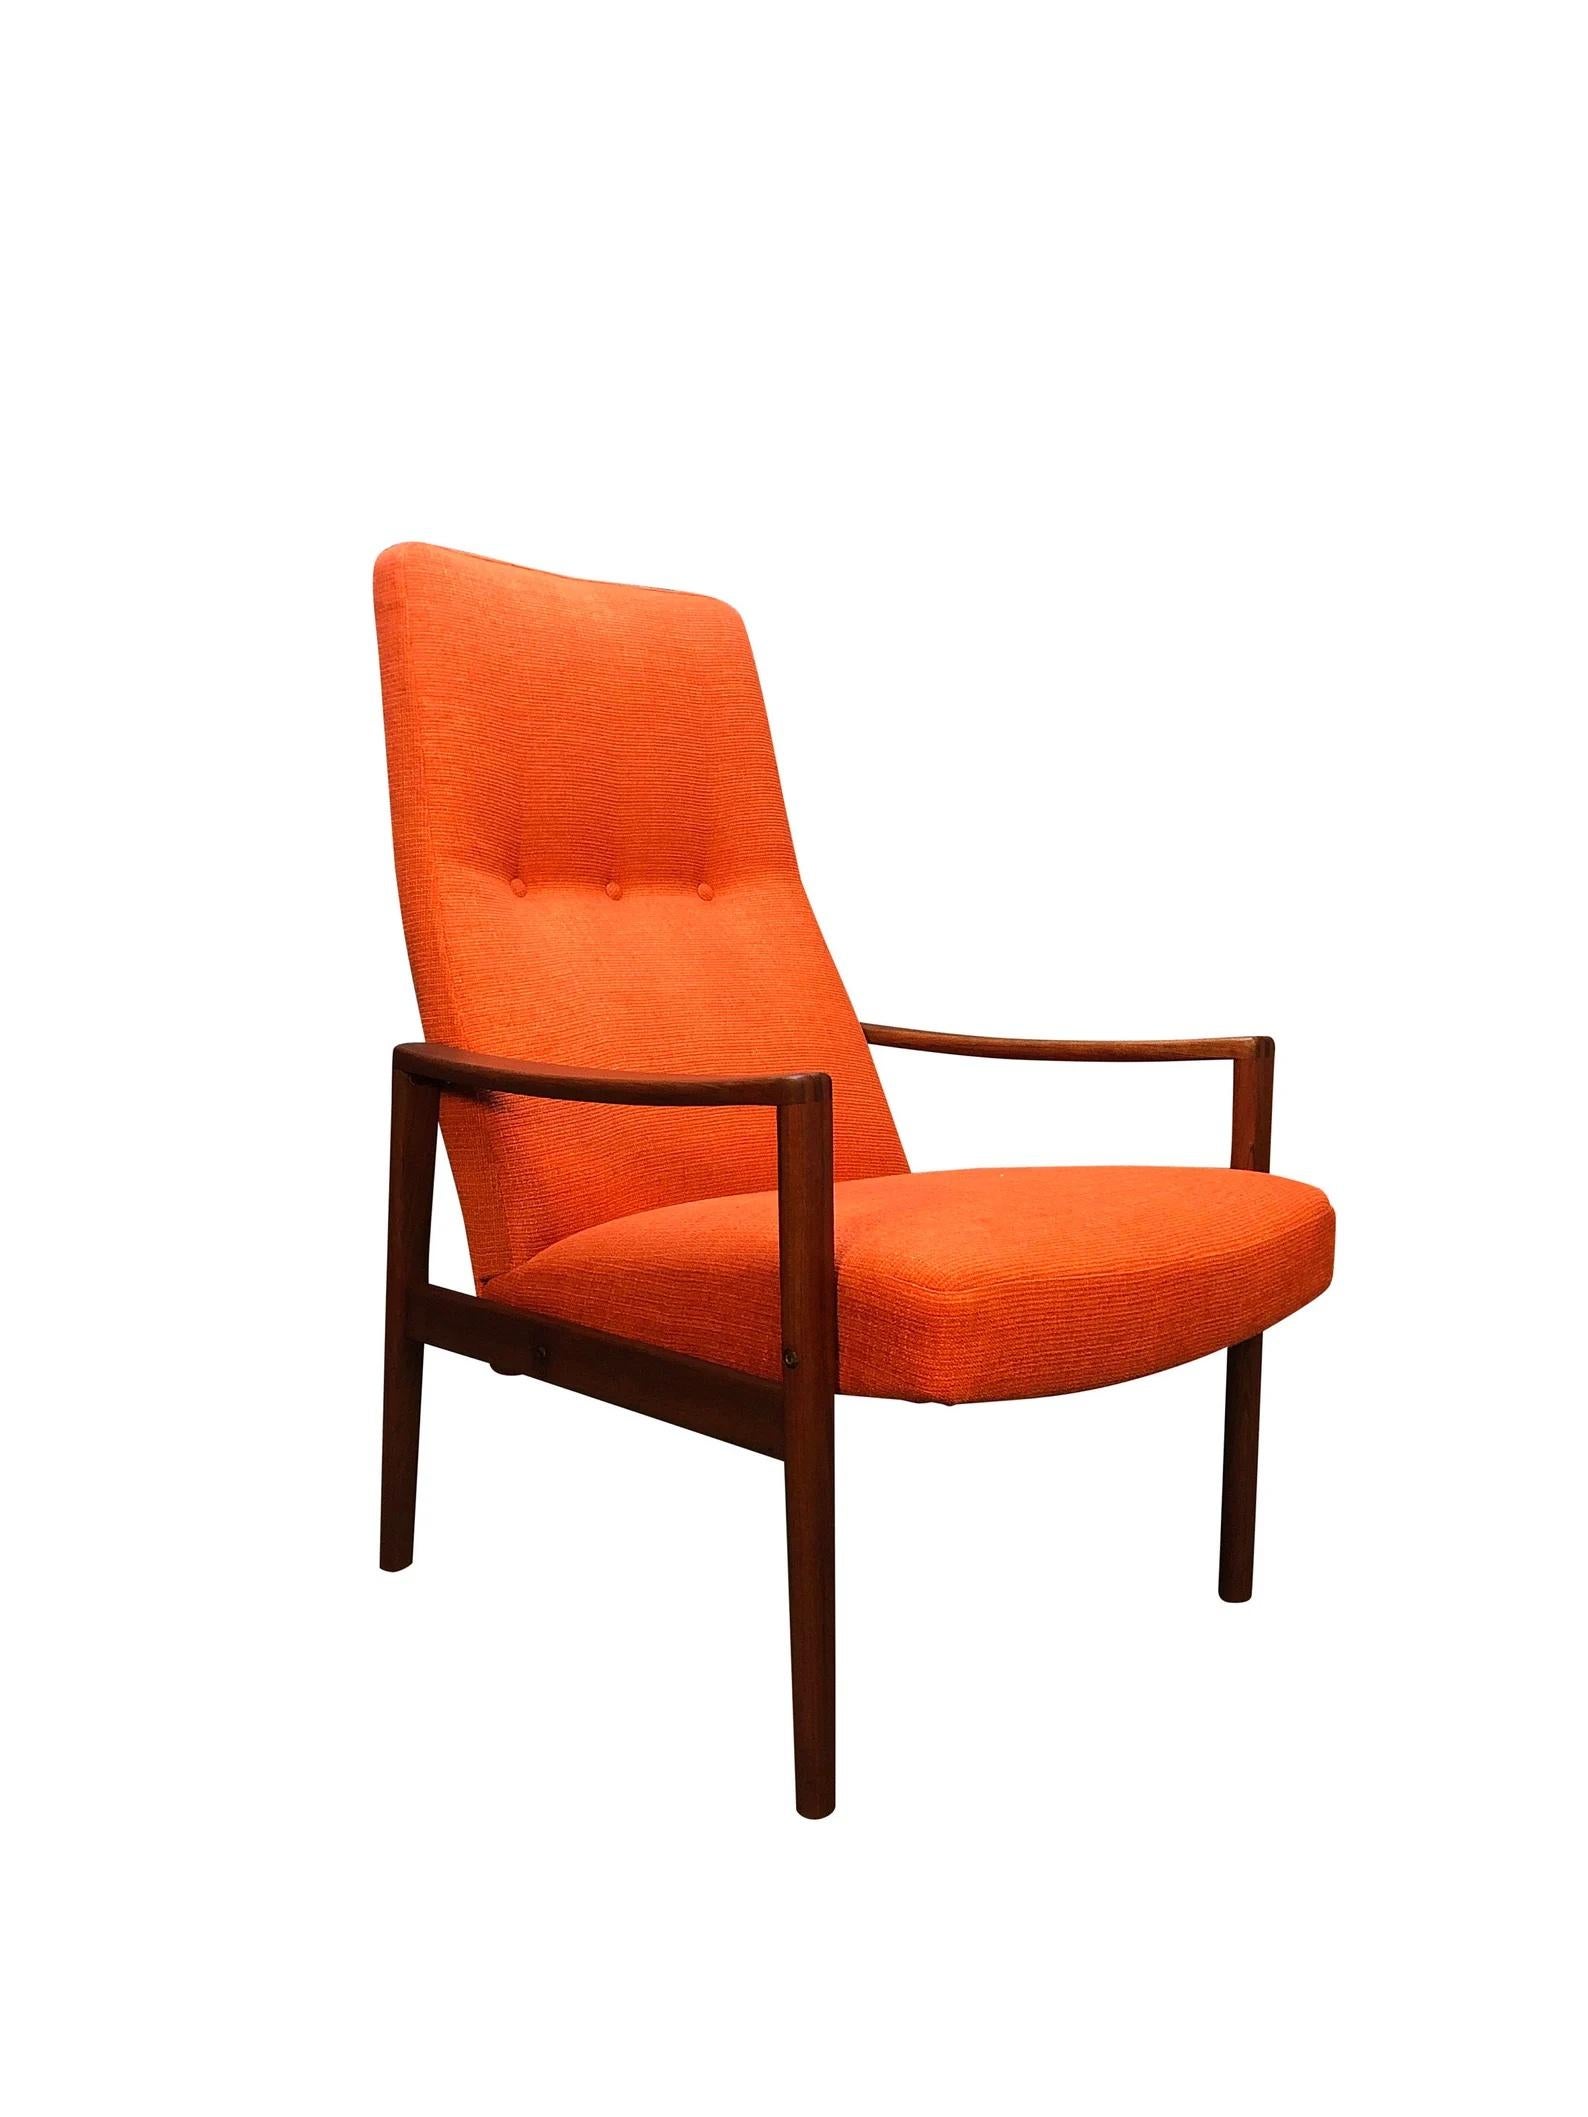 Voici une belle chaise longue fabriquée en Suède pour Ulferts Fabriker vers les années 1960, cette chaise longue à haut dossier a un look superbe. Le fauteuil a été entièrement remis à neuf et est recouvert d'un nouveau tissu orange de haute qualité